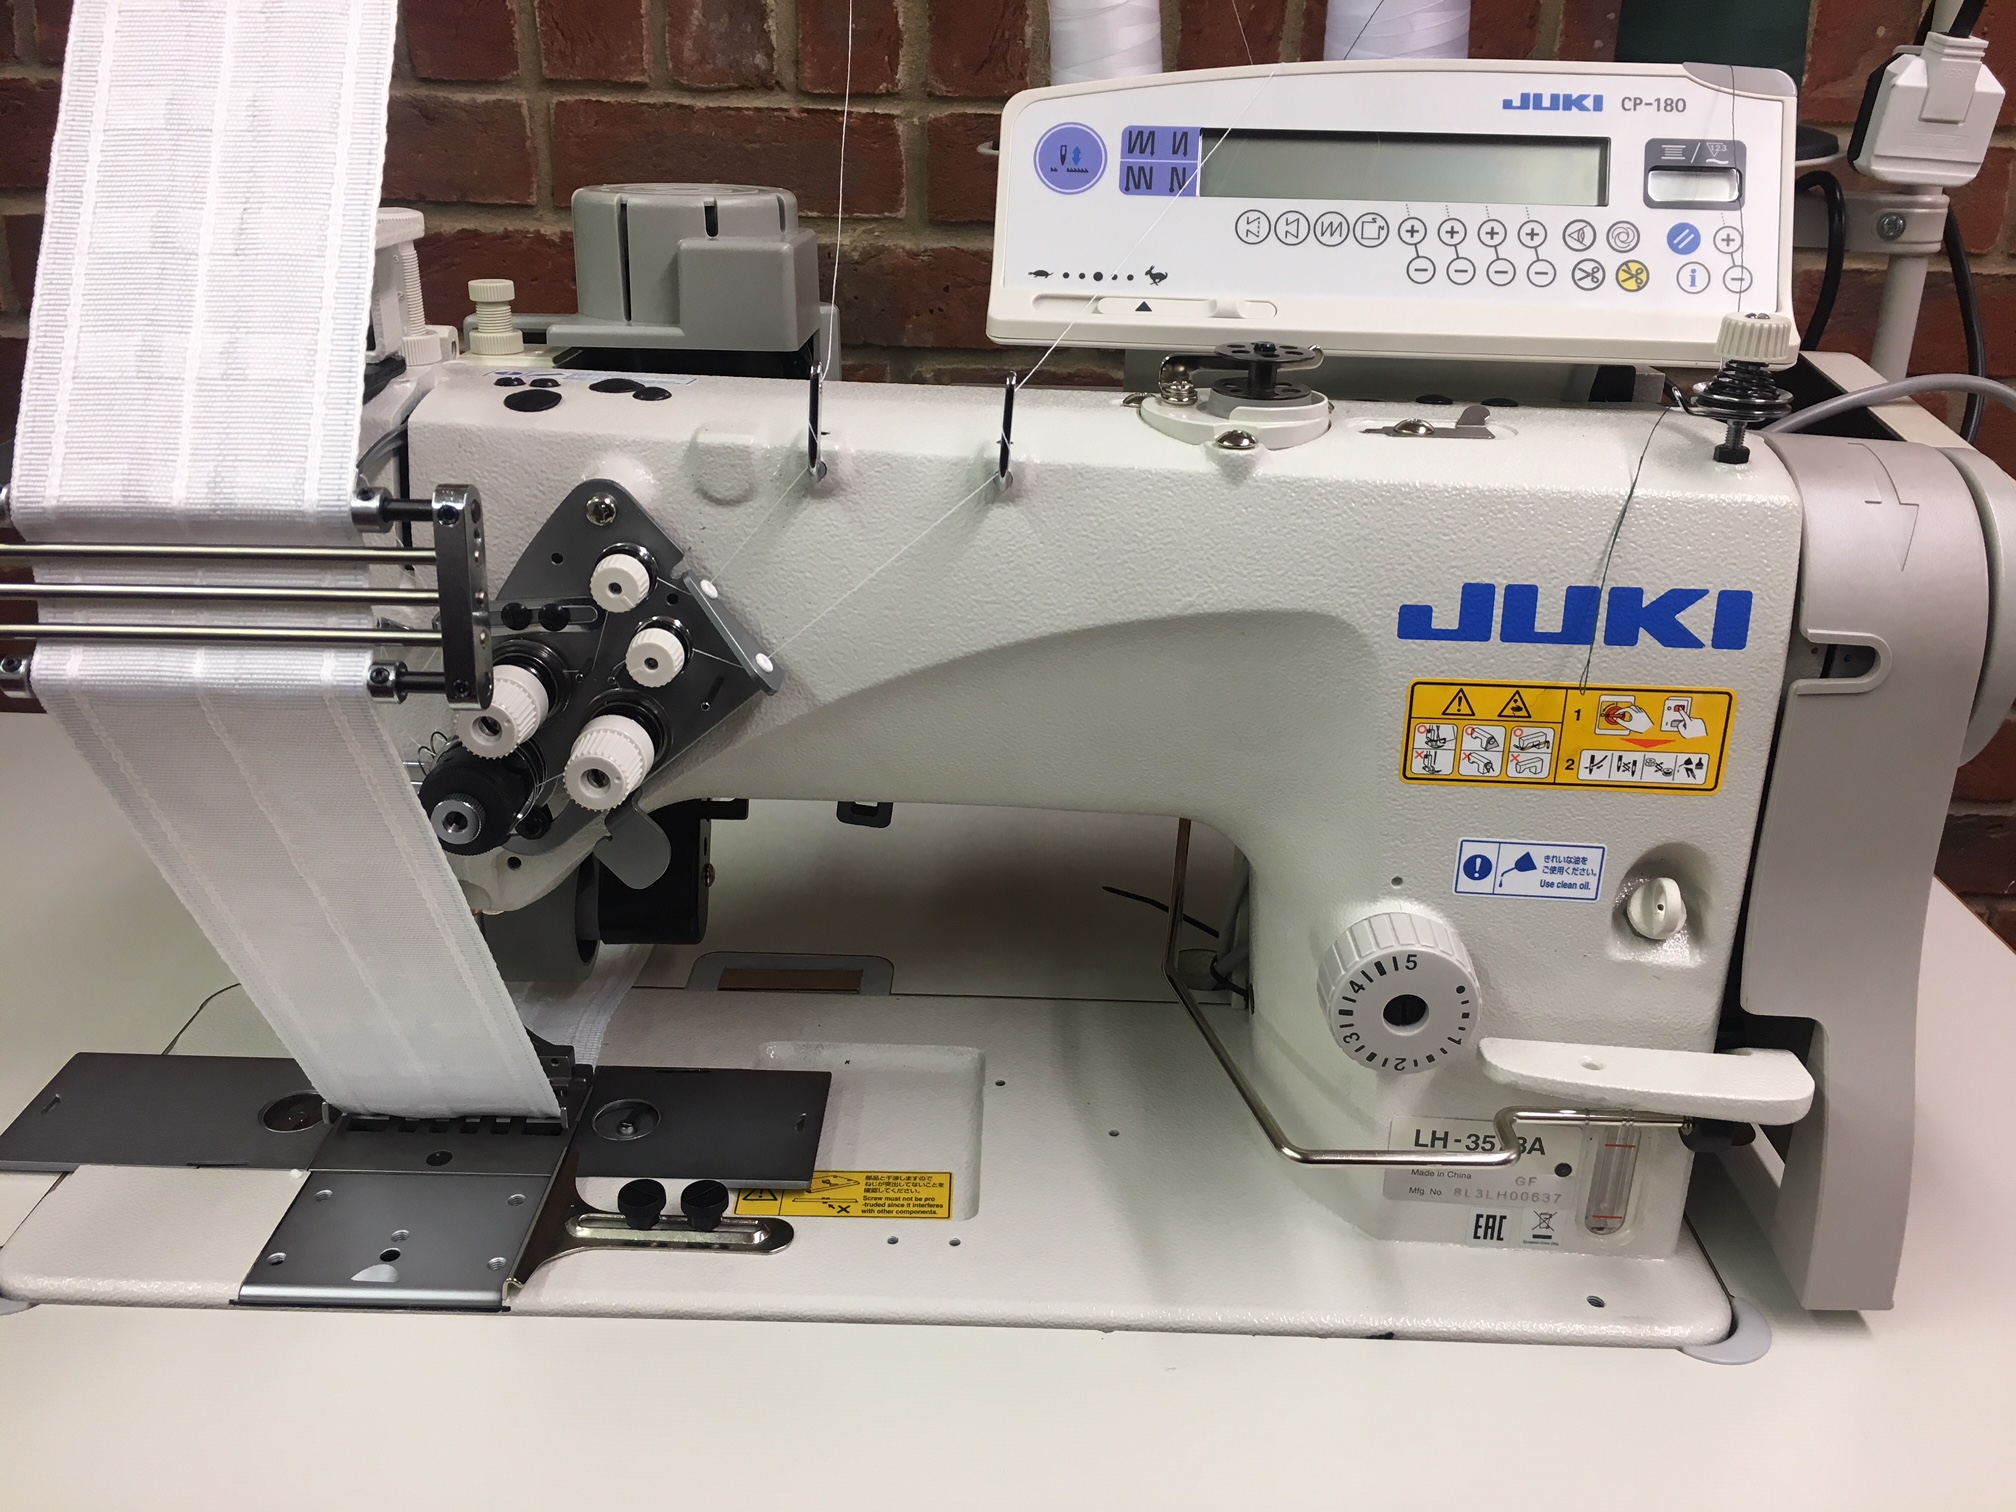 Juki LH-3578A‐65 mmゲージ2本針ロックステッチミシン